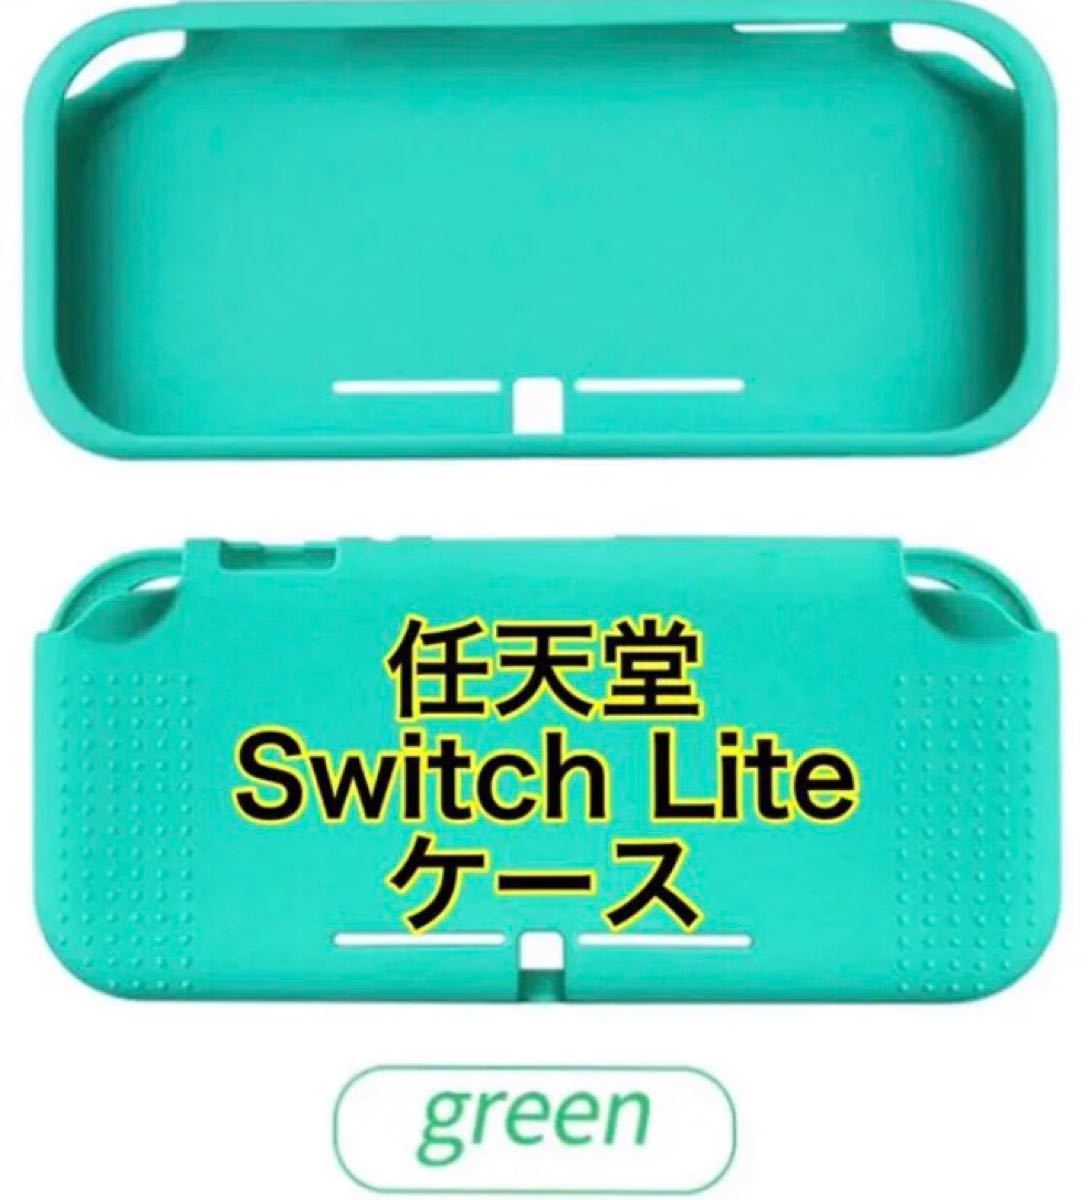 ニンテンドー スイッチライト Switch lite シリコンケース カバー